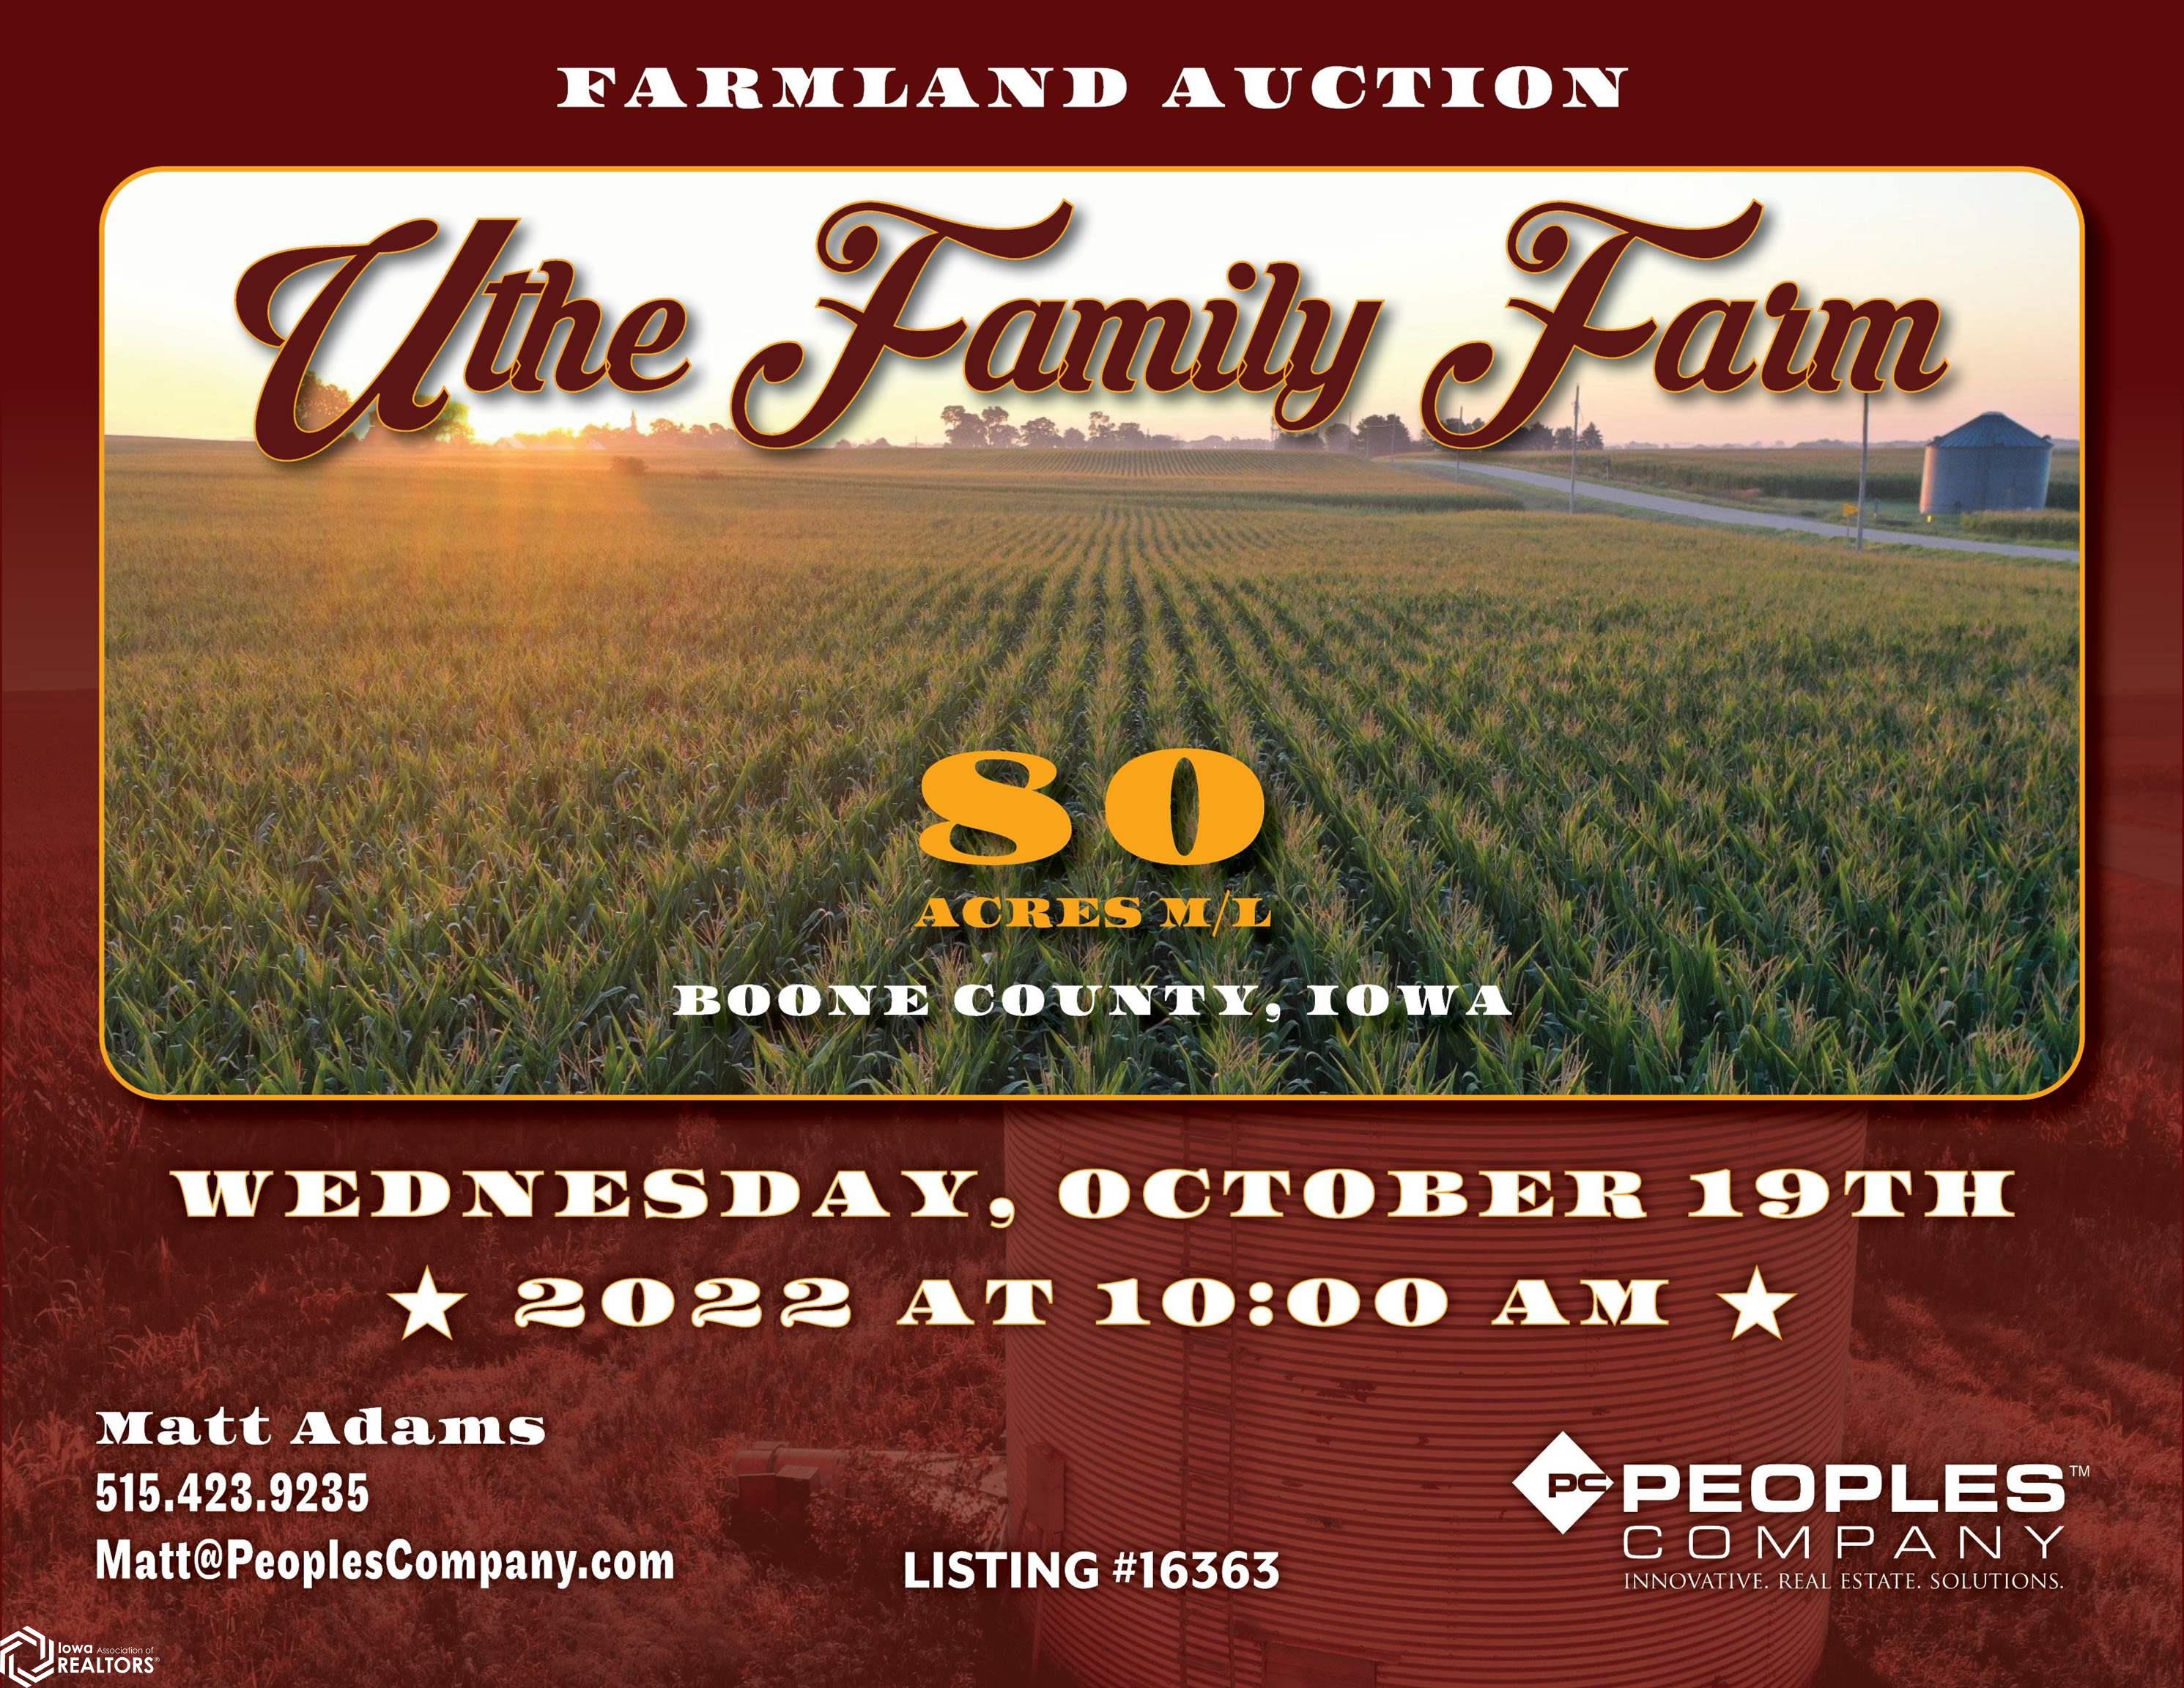 130th, Boone, Iowa 50036, ,Farm,For Sale,130th,6302311